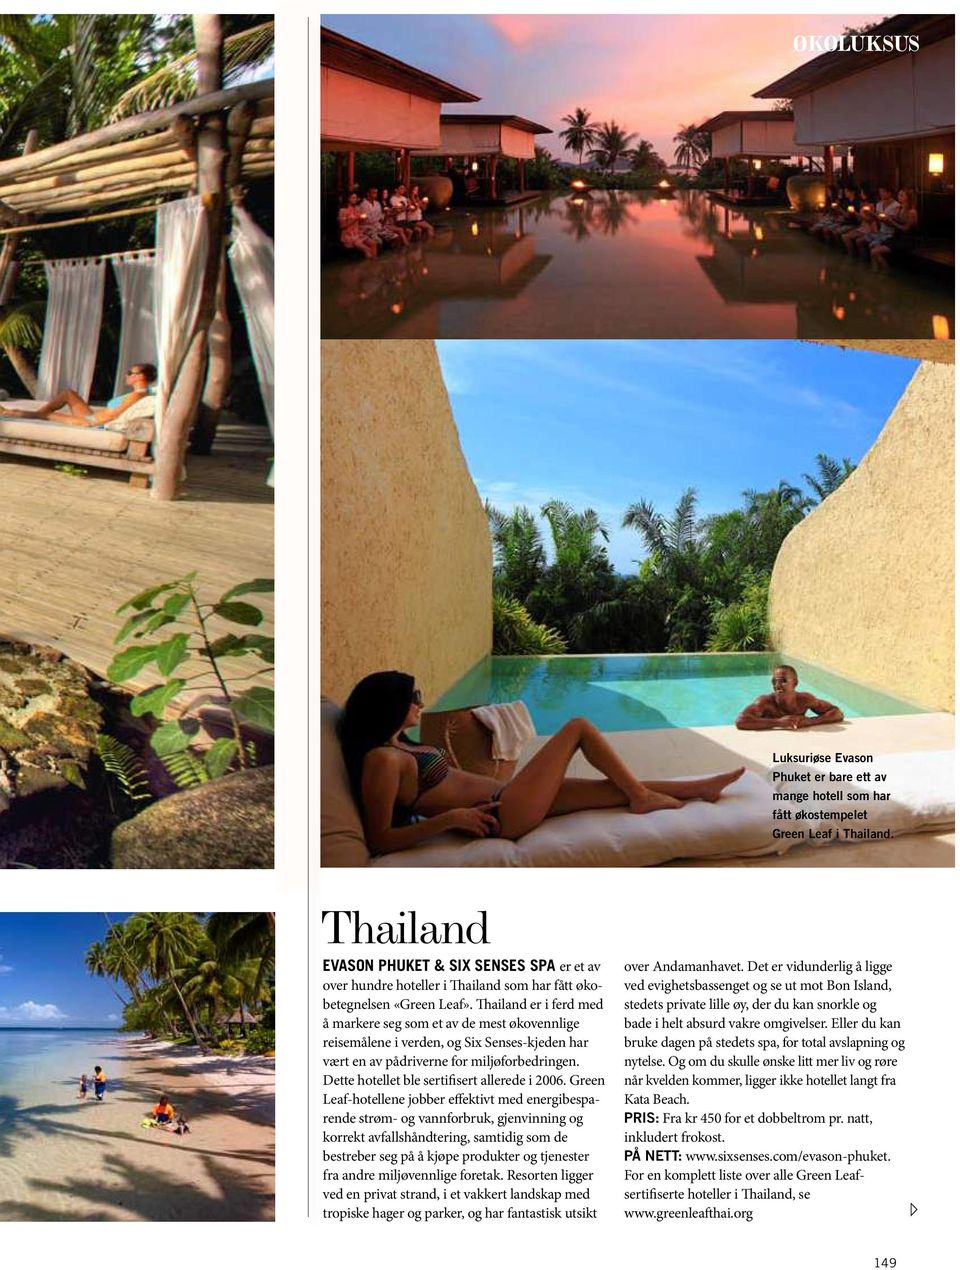 Thailand er i ferd med å markere seg som et av de mest økovennlige reisemålene i verden, og Six Senses-kjeden har vært en av pådriverne for miljøforbedringen.